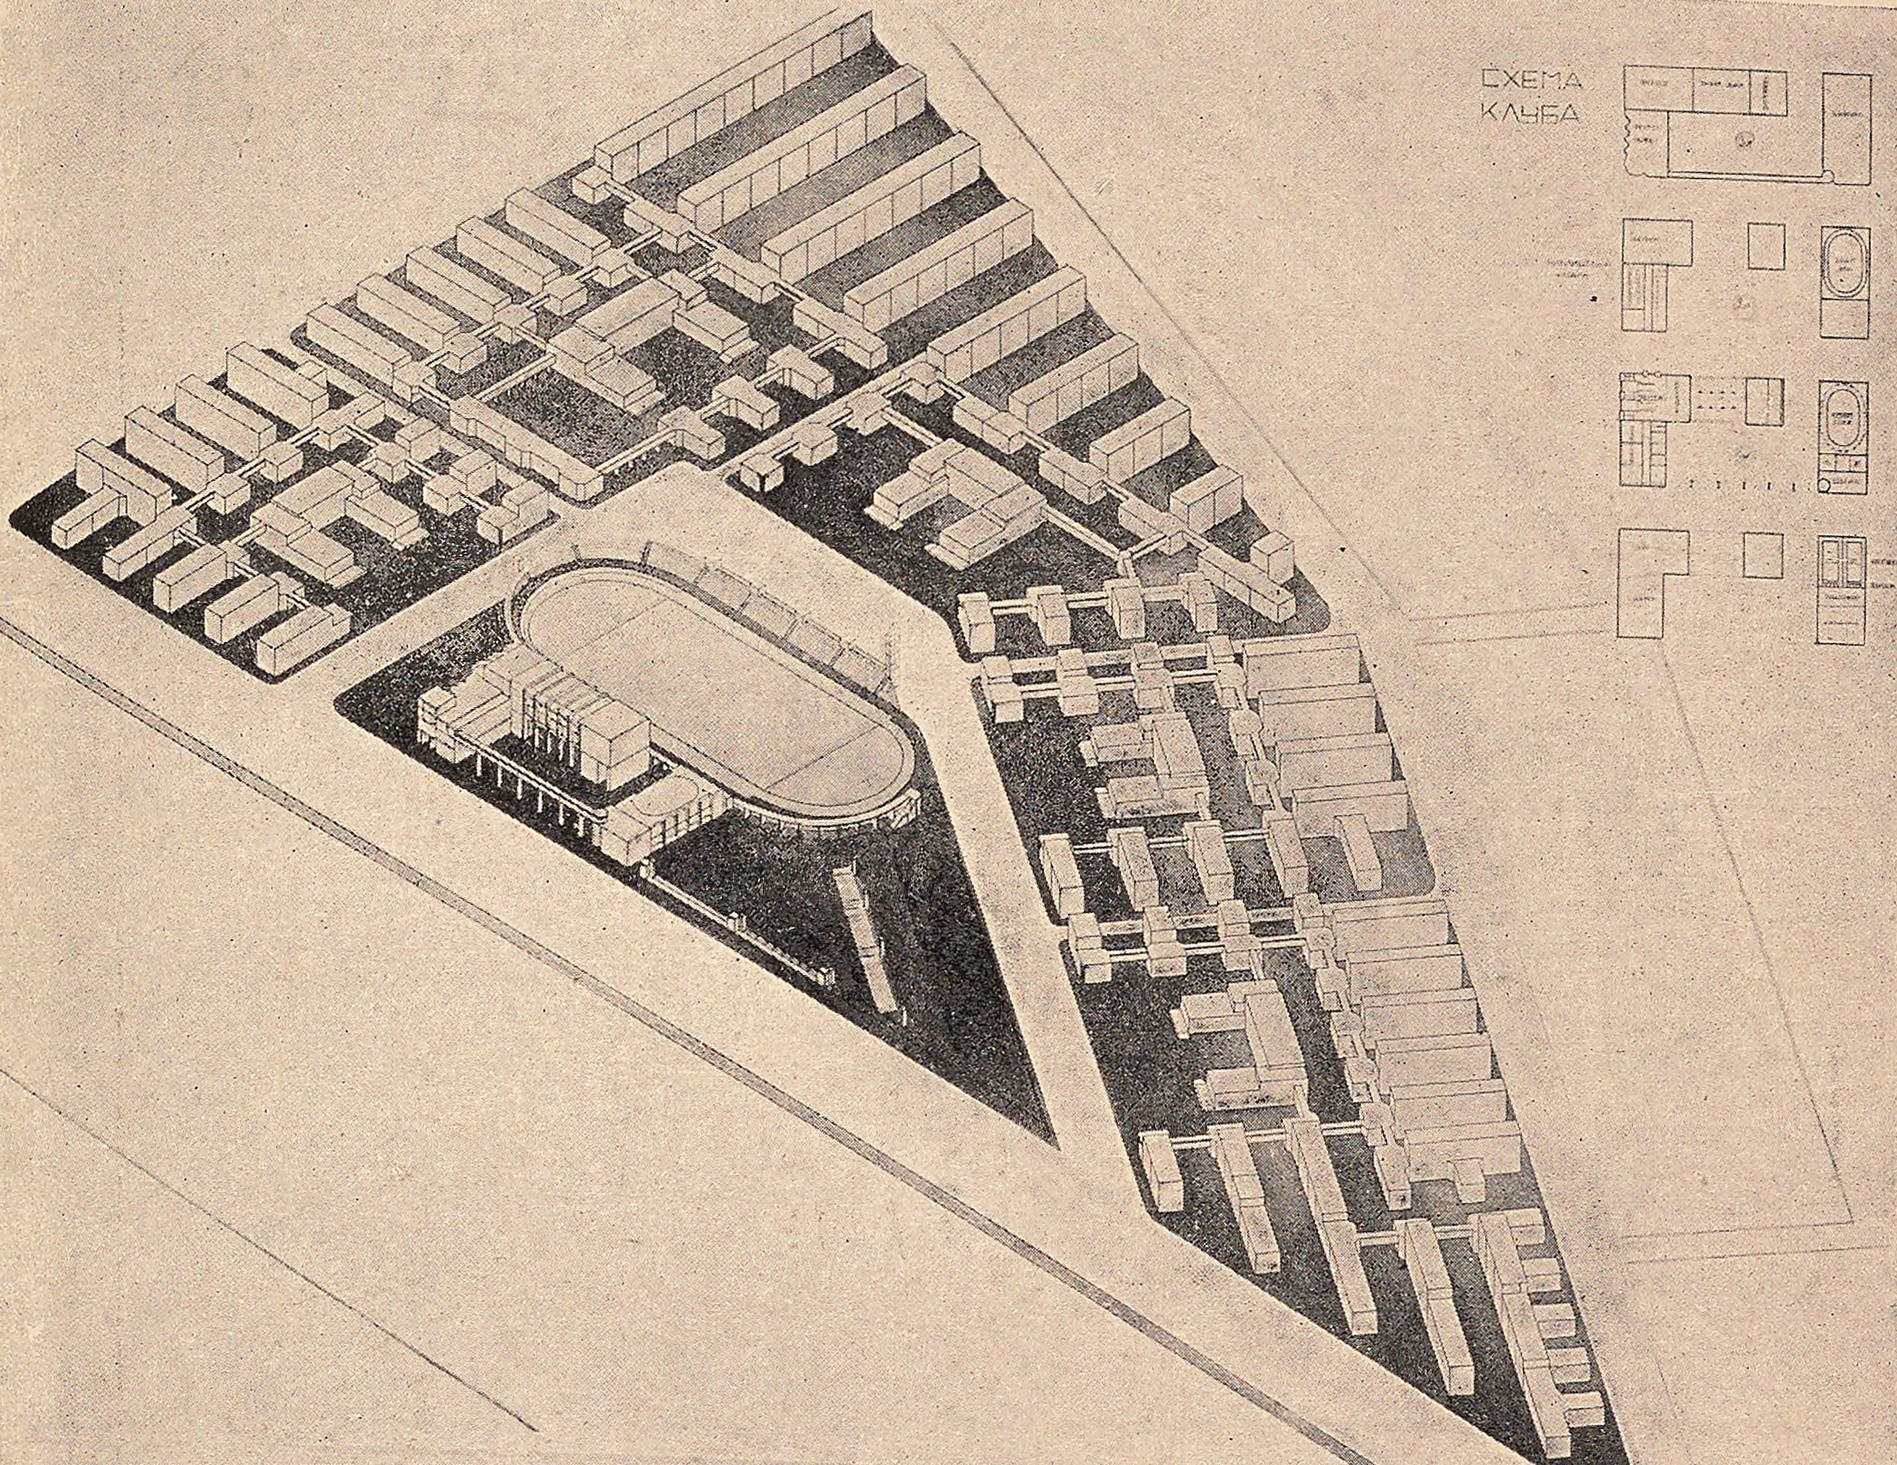 Планировка жилого коммунального городского квартала. Работа студента М. А. Туркус, 1926 г.